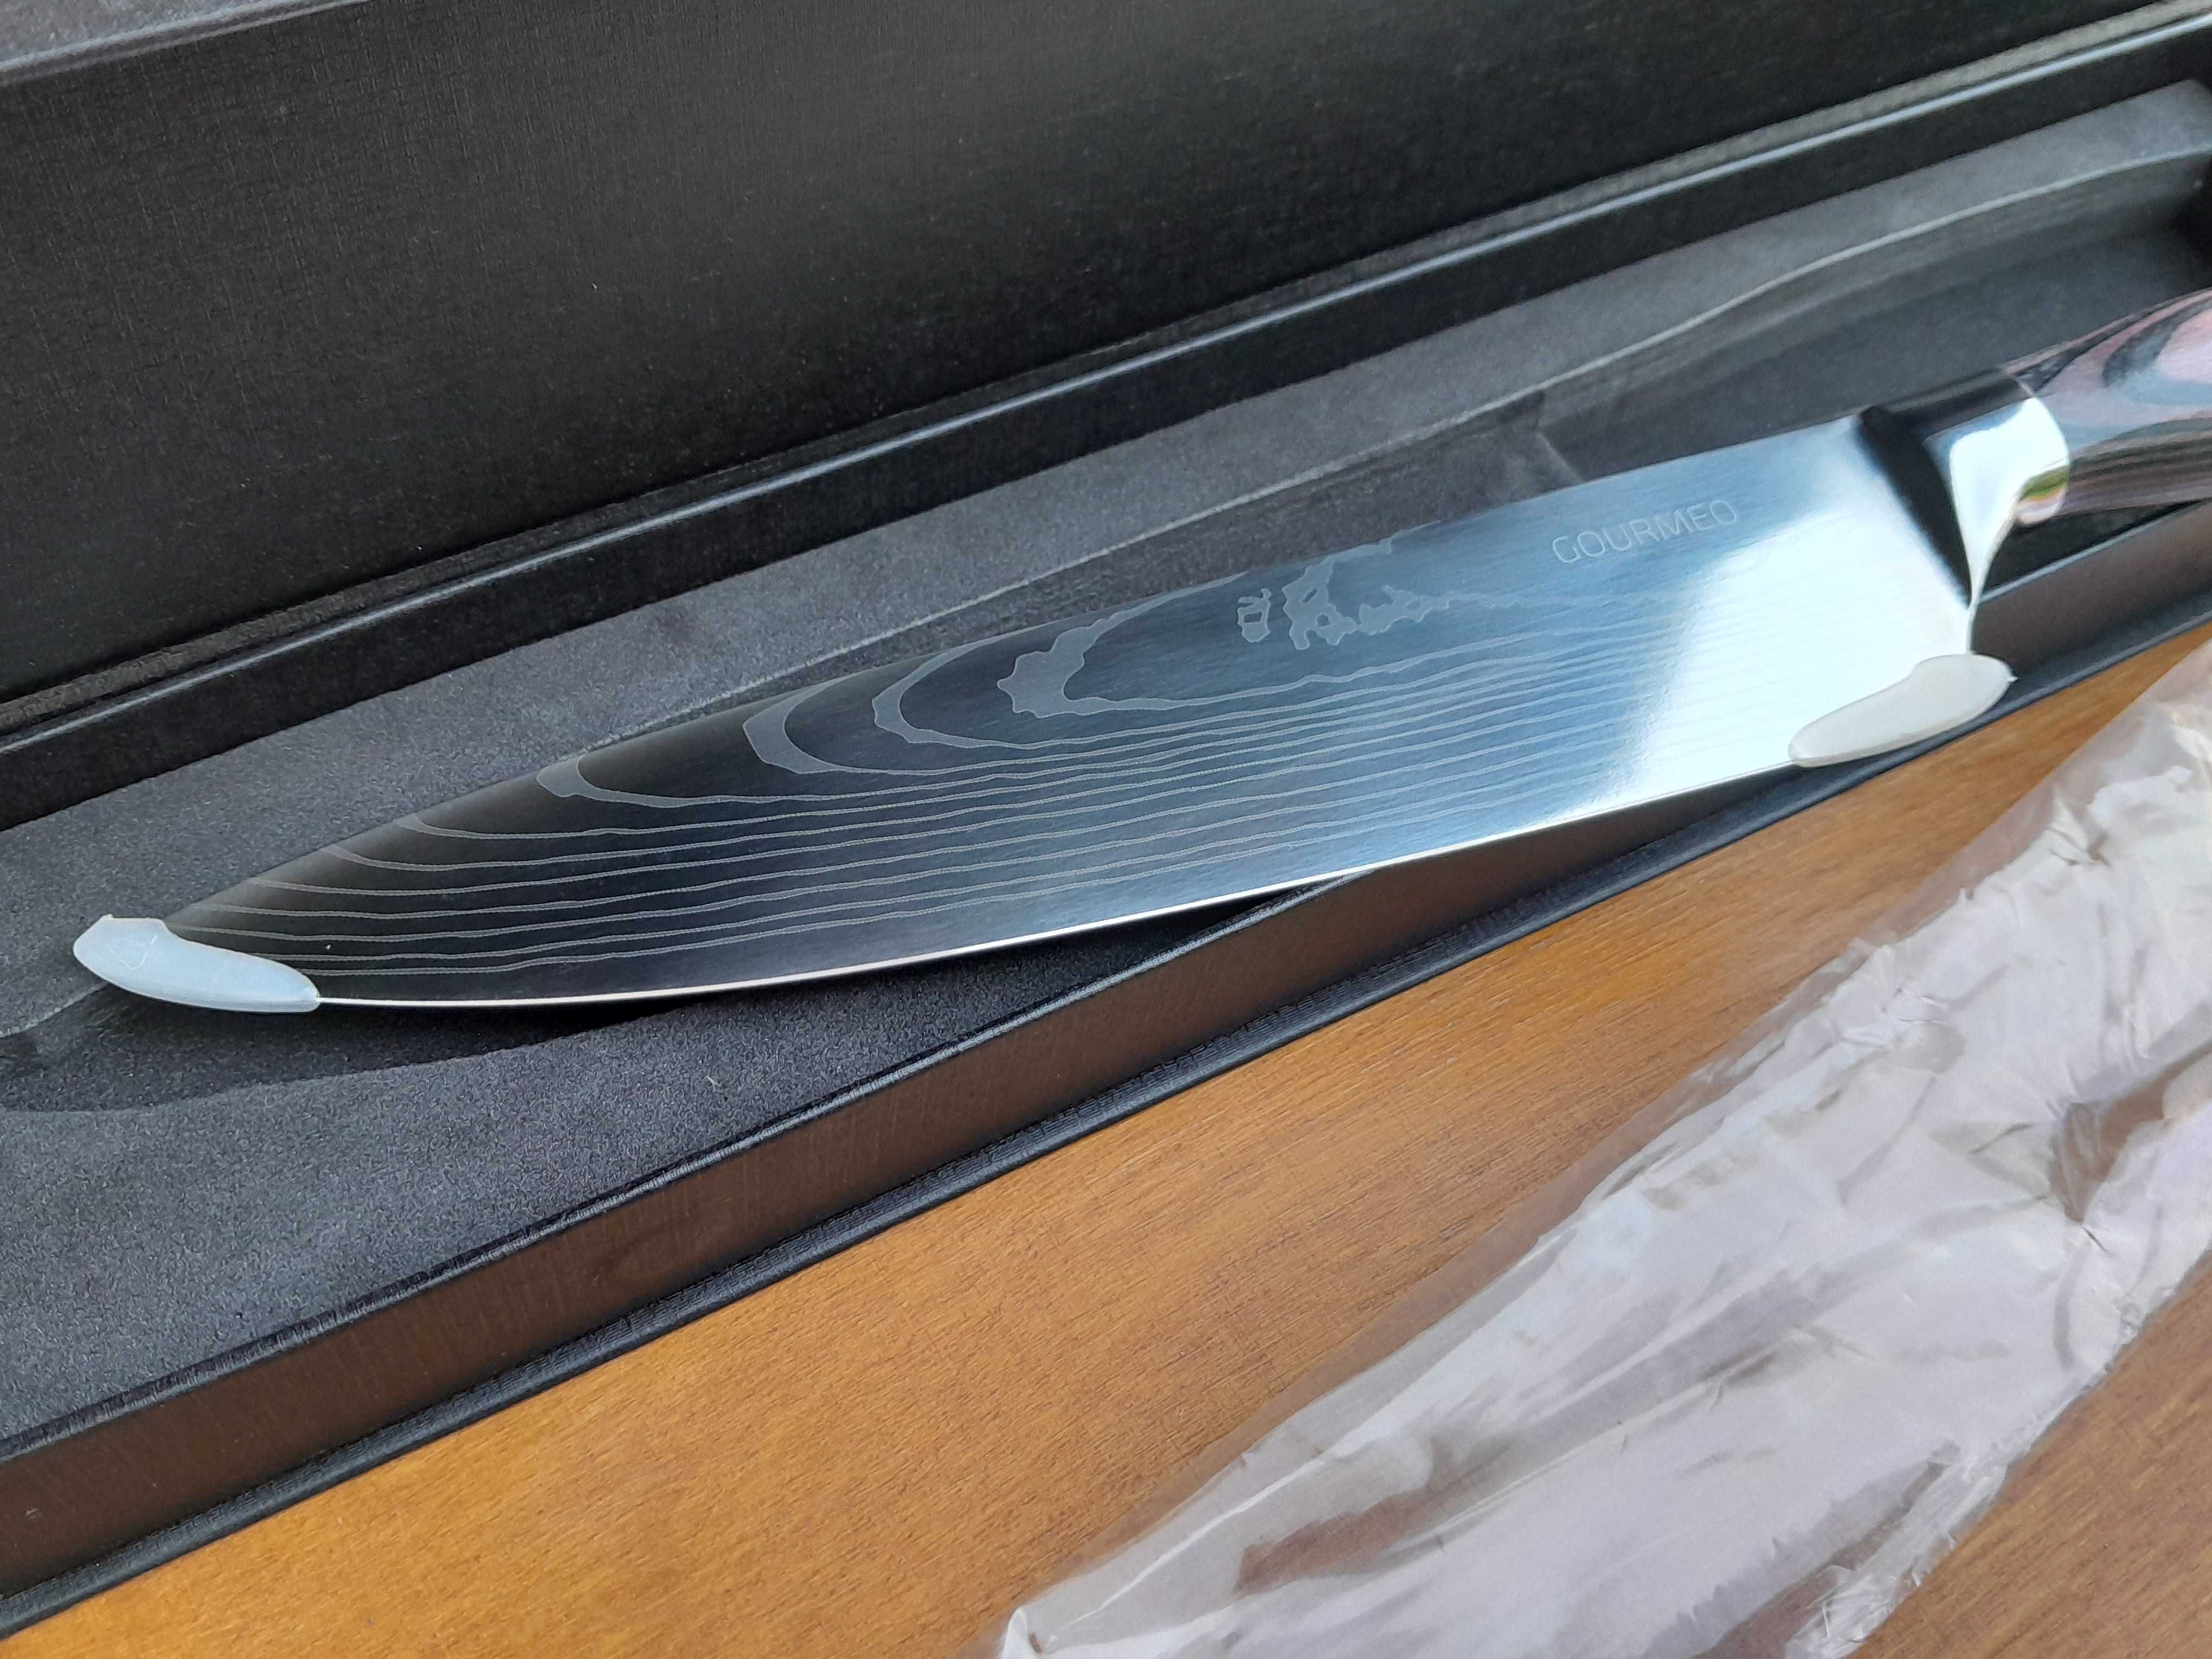 Japoński nóż kuchenny 20 cm Gourmeo w stylu damasceńskim nowy outlet